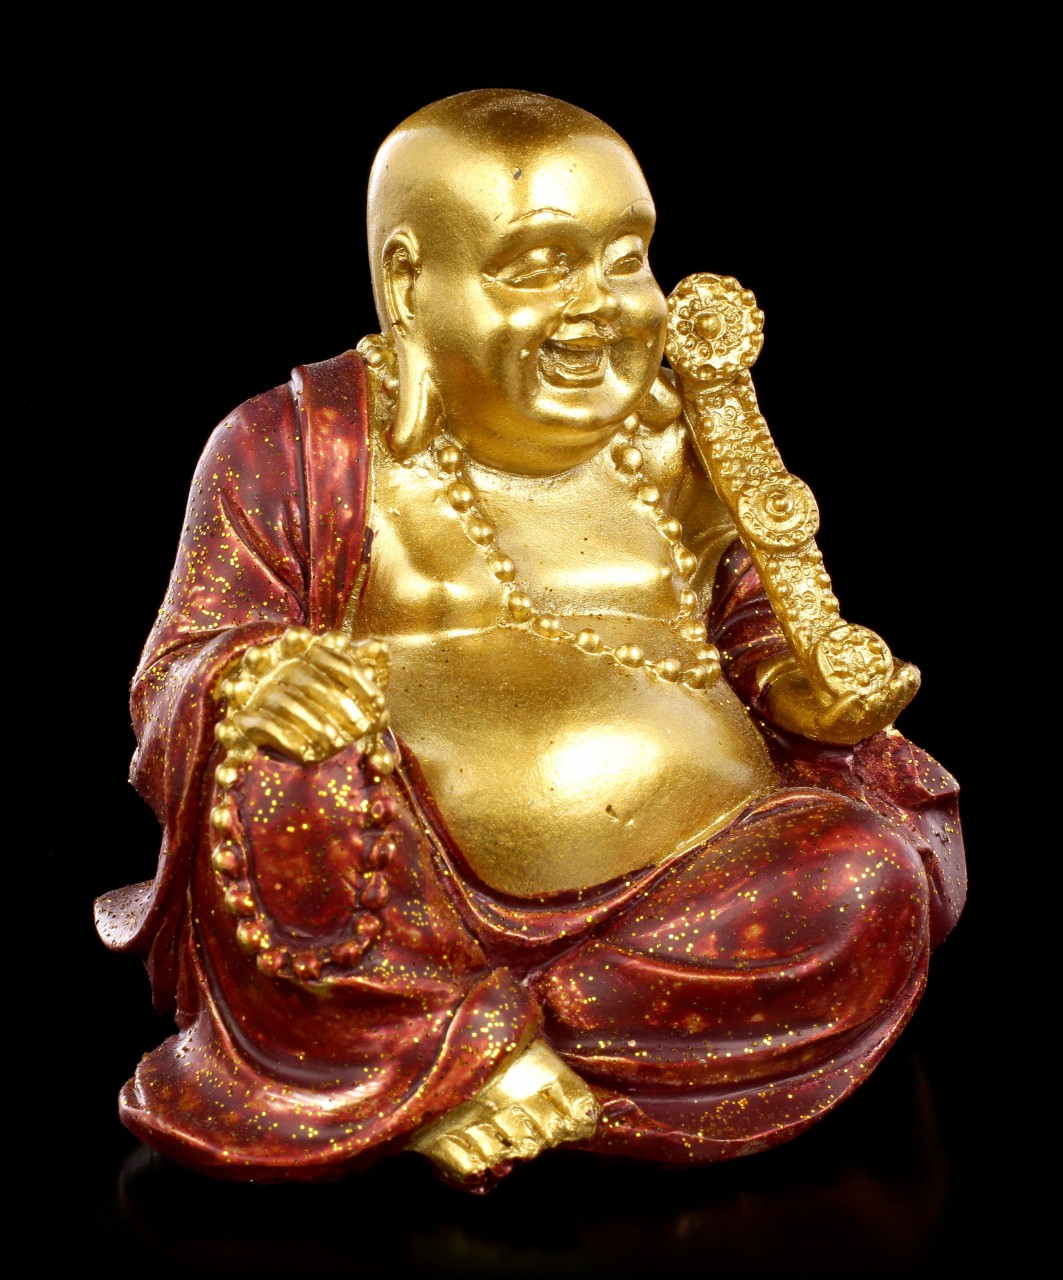 Small Buddha Money Bank - Happiness